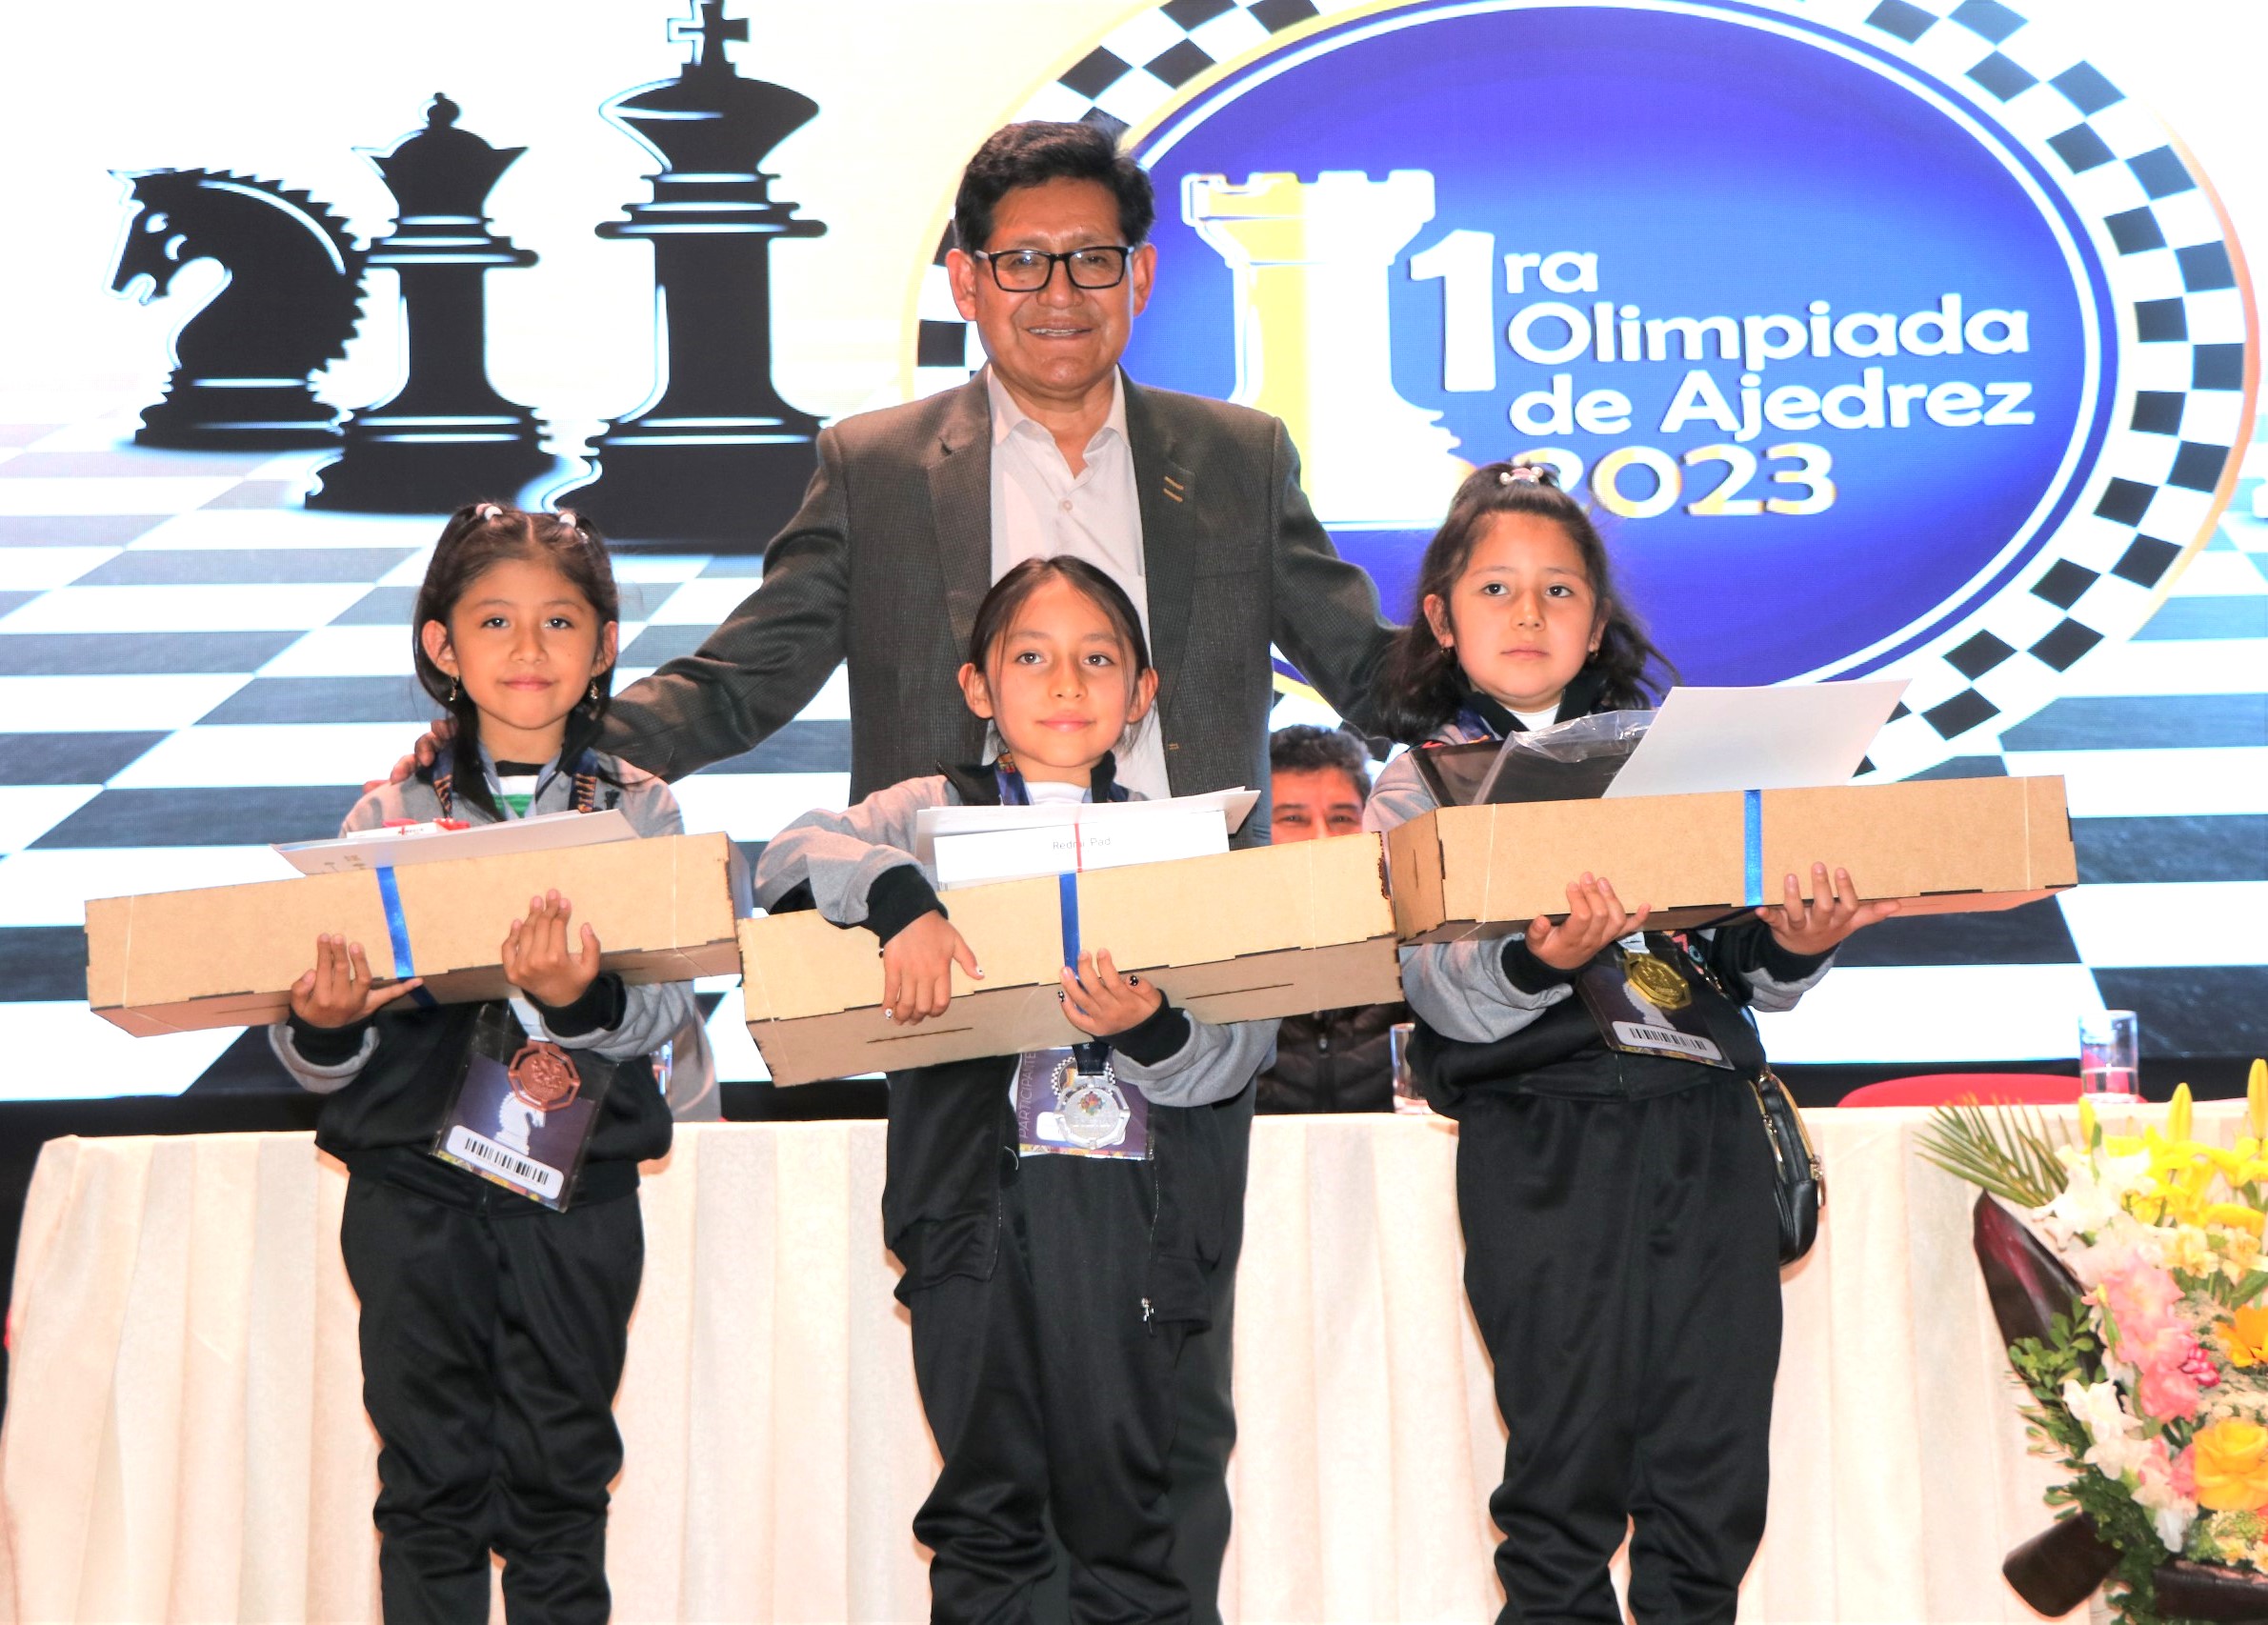 Educación premió con laptops, tablets, celulares, medallas y tableros a los 36 estudiantes ganadores de la 1ra. Olimpiada de Ajedrez   